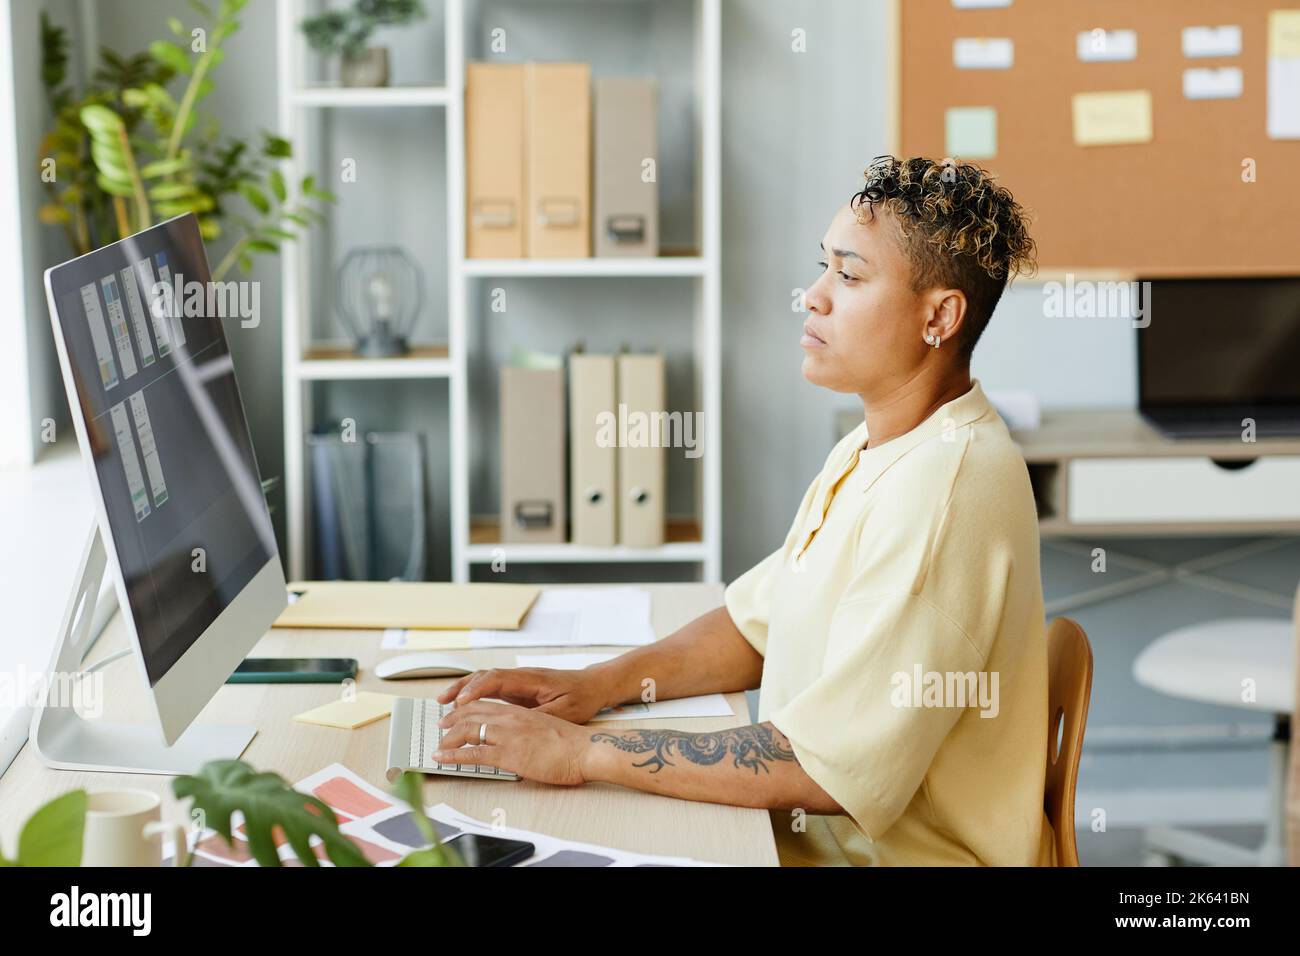 Vista laterale ritratto di una donna nera tatuata che utilizza il computer in ufficio mentre progetta l'interfaccia app mobile Foto Stock